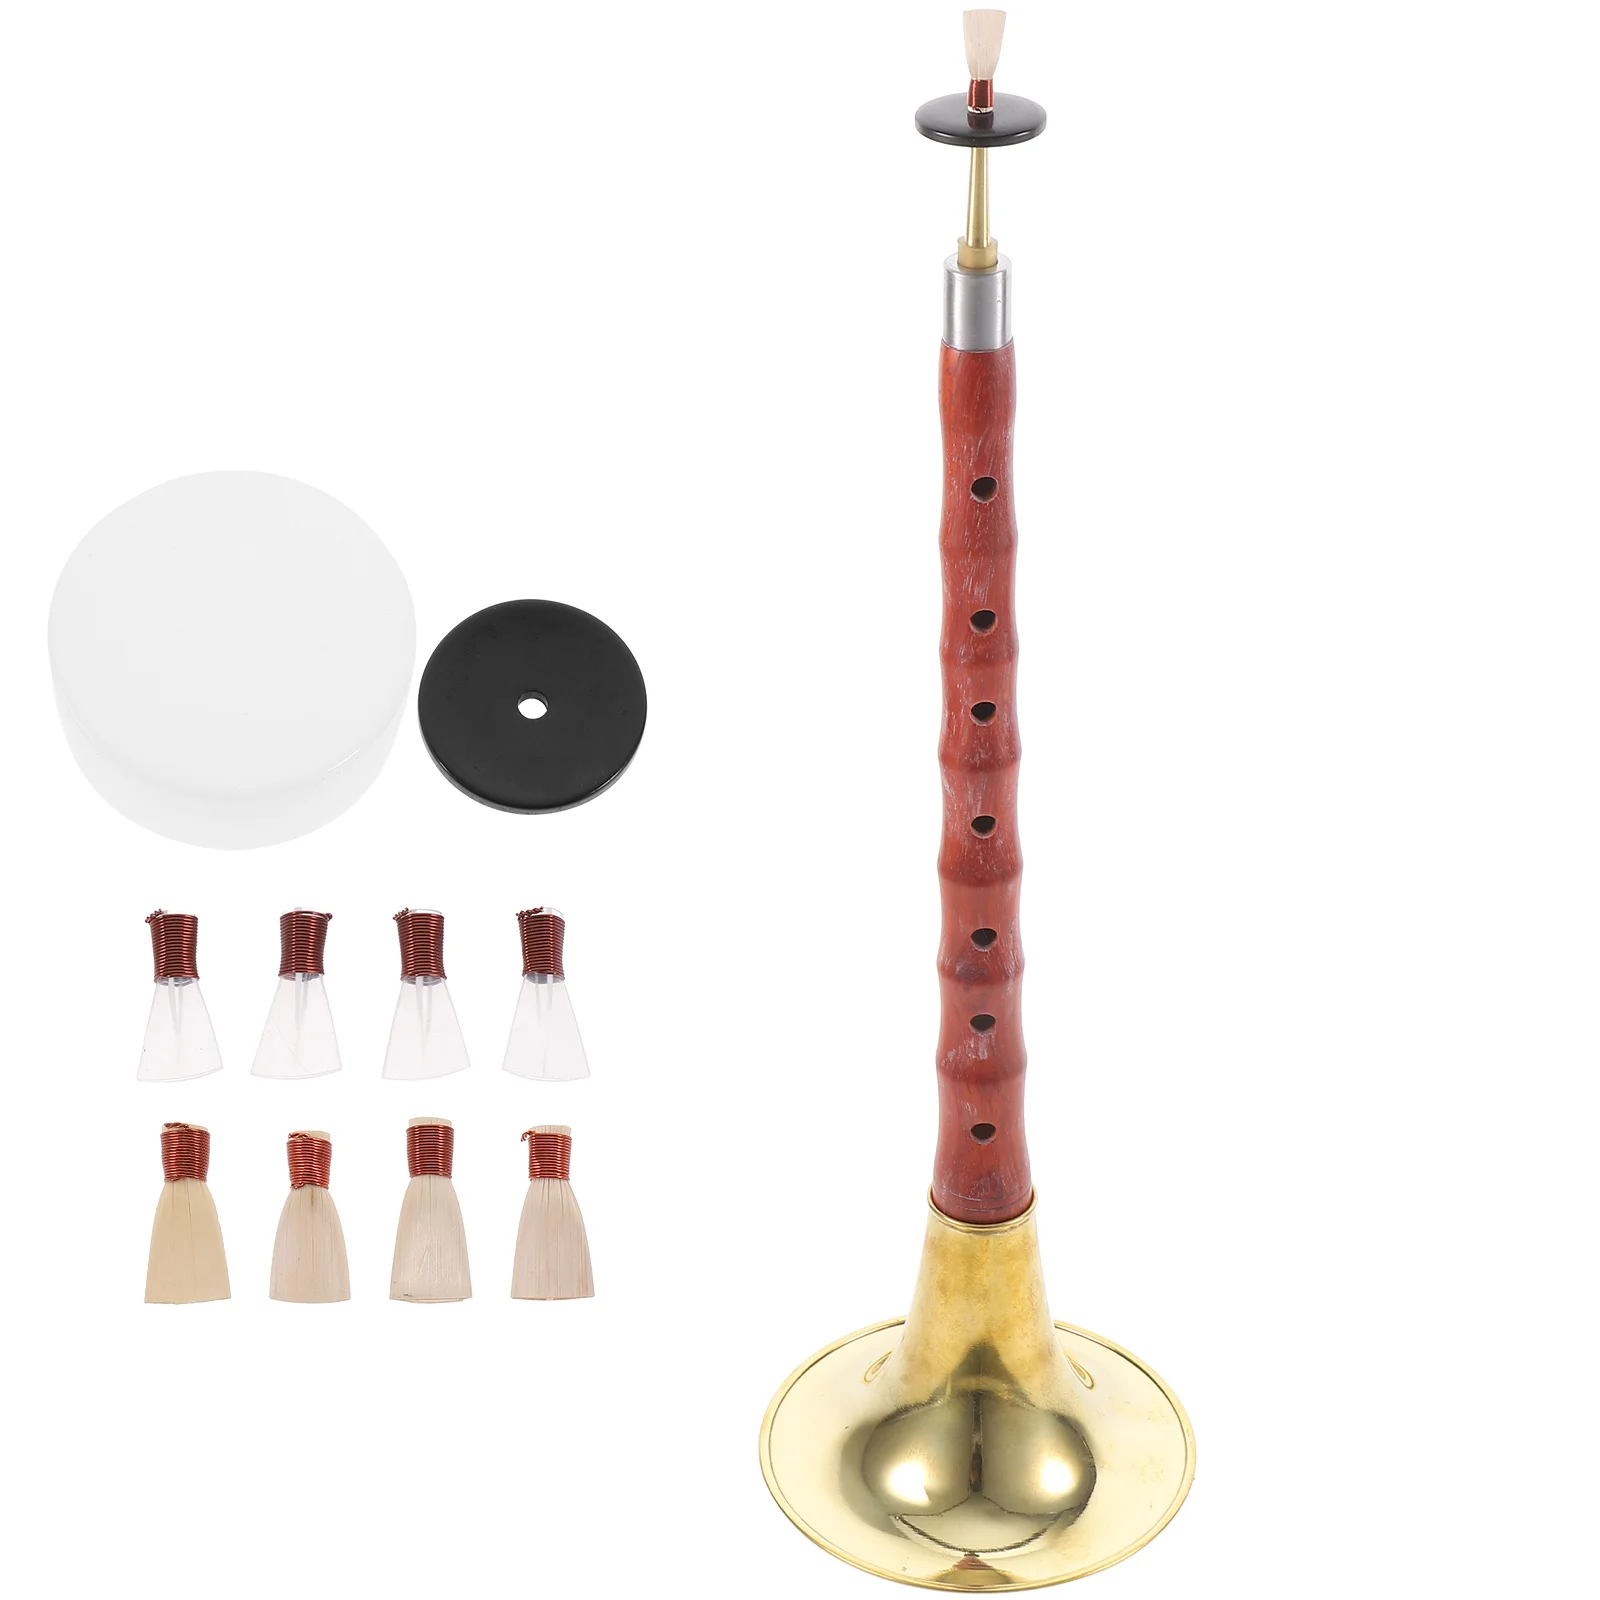 

Высококачественный Китайский инструмент для начинающих A C D ключ суона из розового дерева Suona инструмент этнический музыкальный инструмент